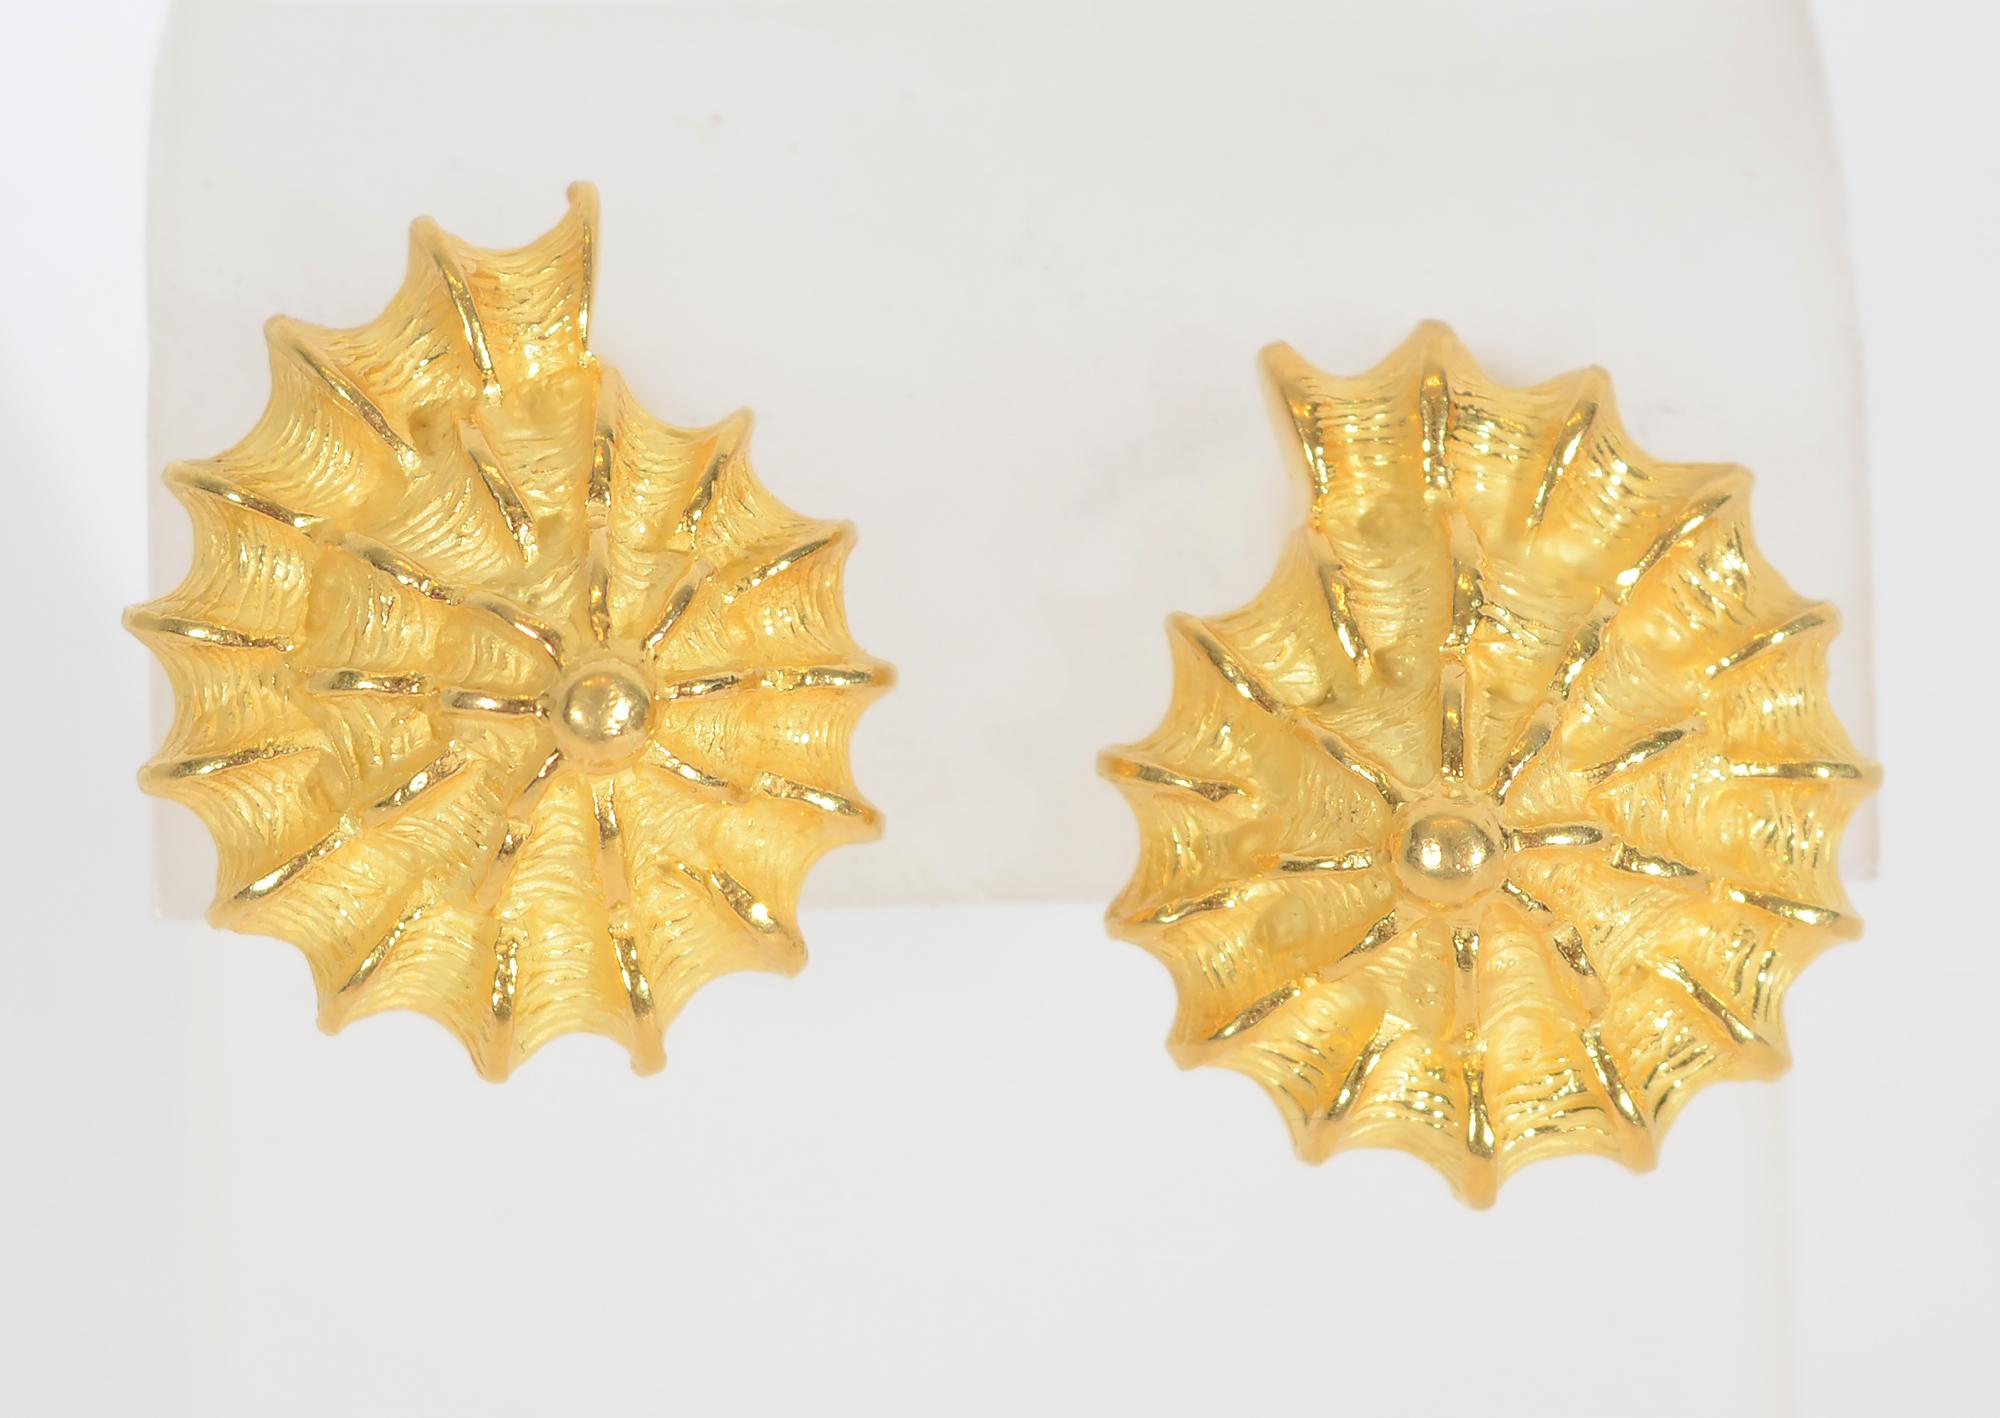 Wunderschön geformte und strukturierte Muschelohrringe von Valentin Magro. Sie sind aus 18-karätigem Gold und haben Stift- und Clipverschlüsse.
Sie werden immer noch produziert und von Magro für 5035 $ verkauft.